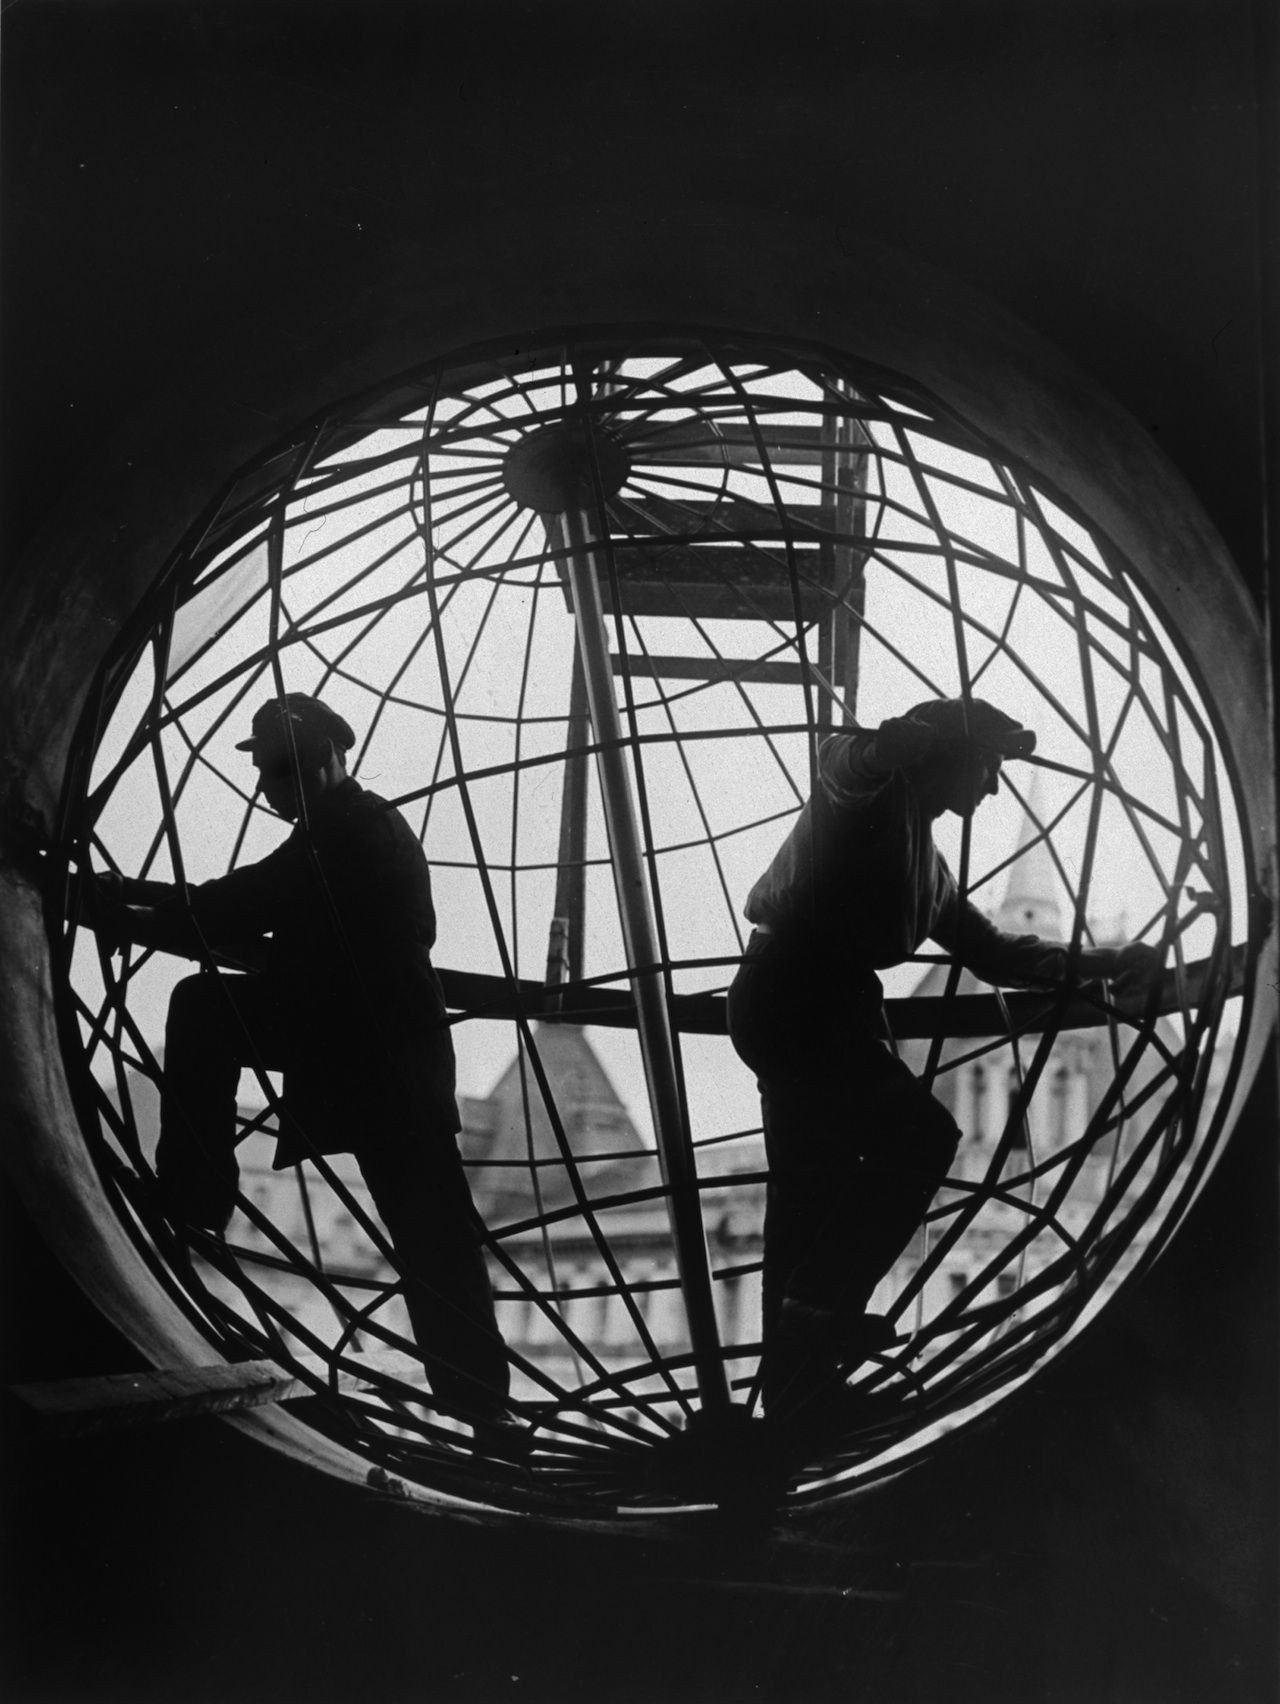 Монтаж конструкции глобуса на Центральном телеграфе, 1928. Фотограф Аркадий Шайхет